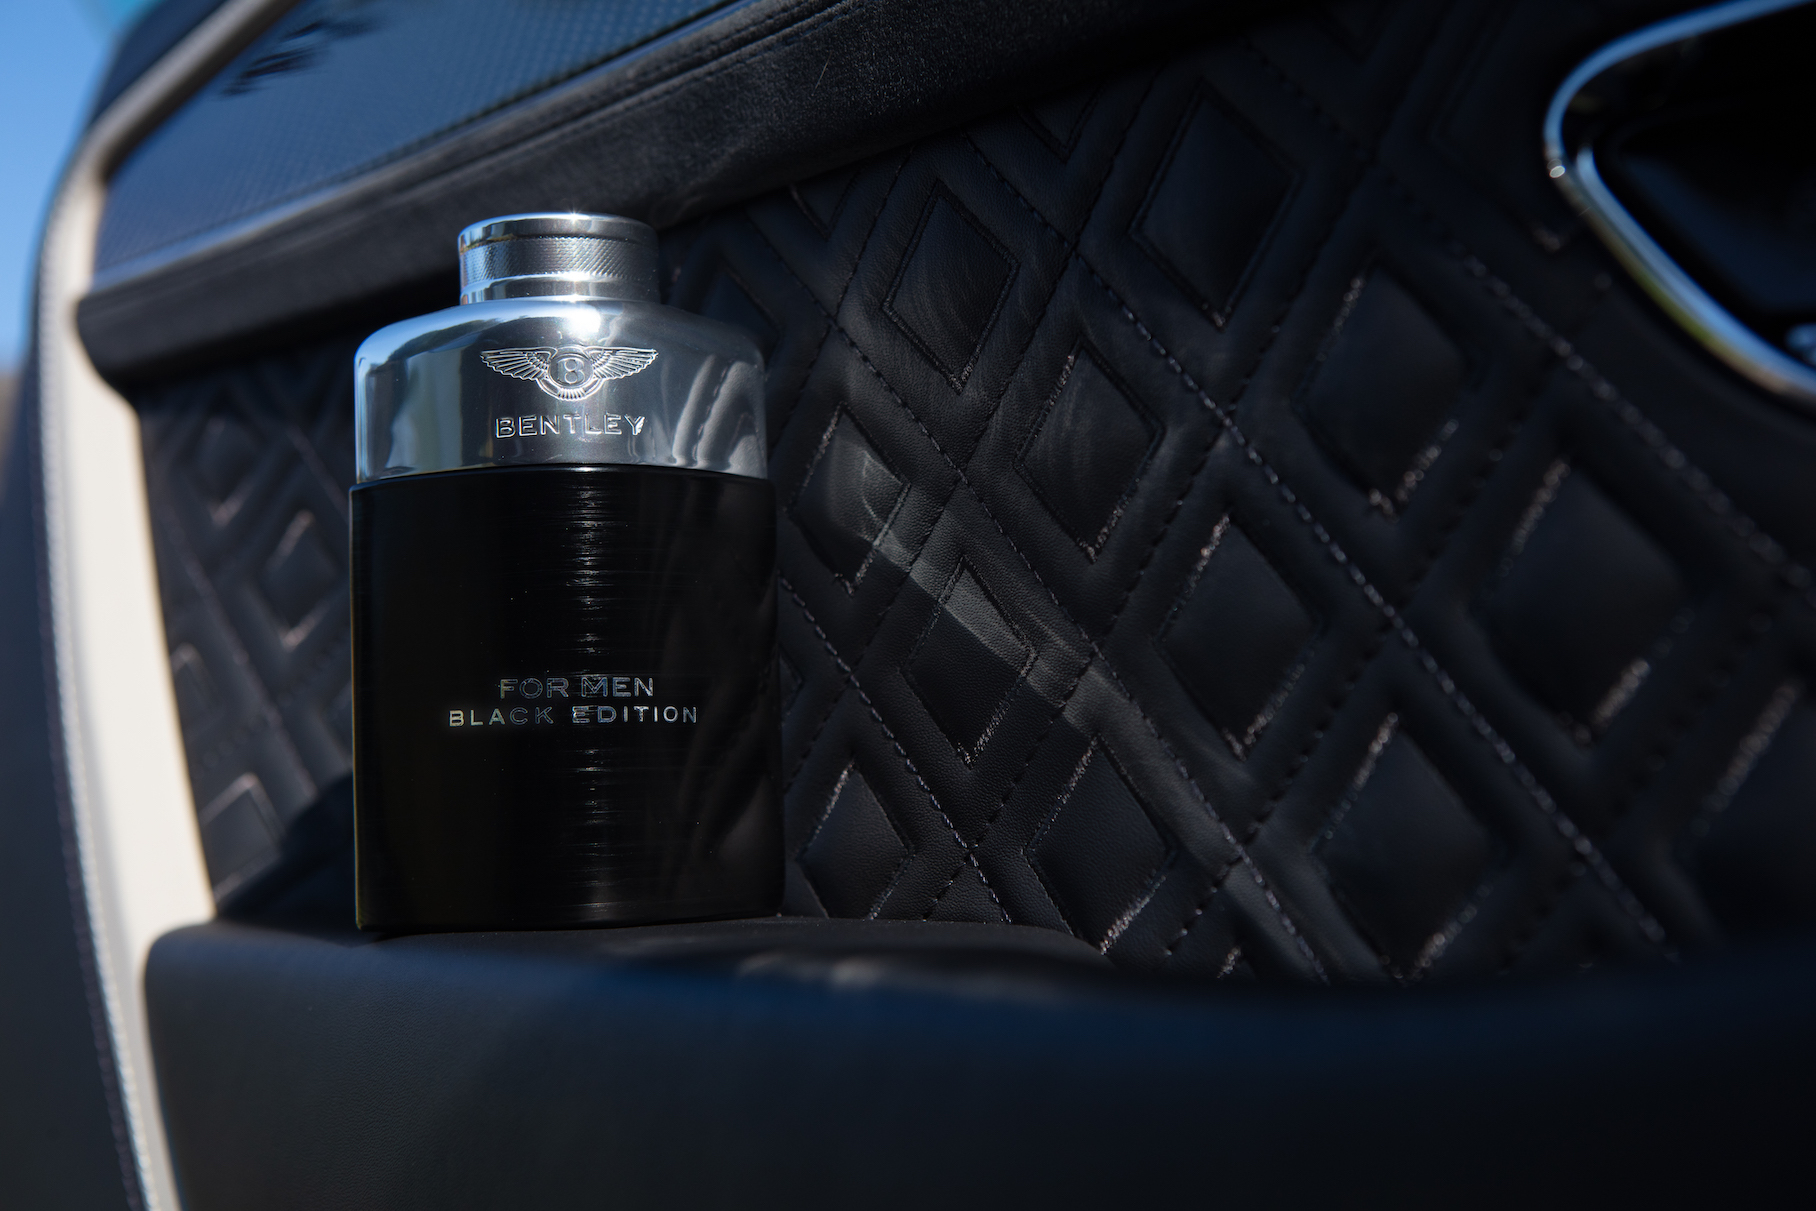 Компания Bentley выпустила новый парфюм для мужчин за 88 долларов